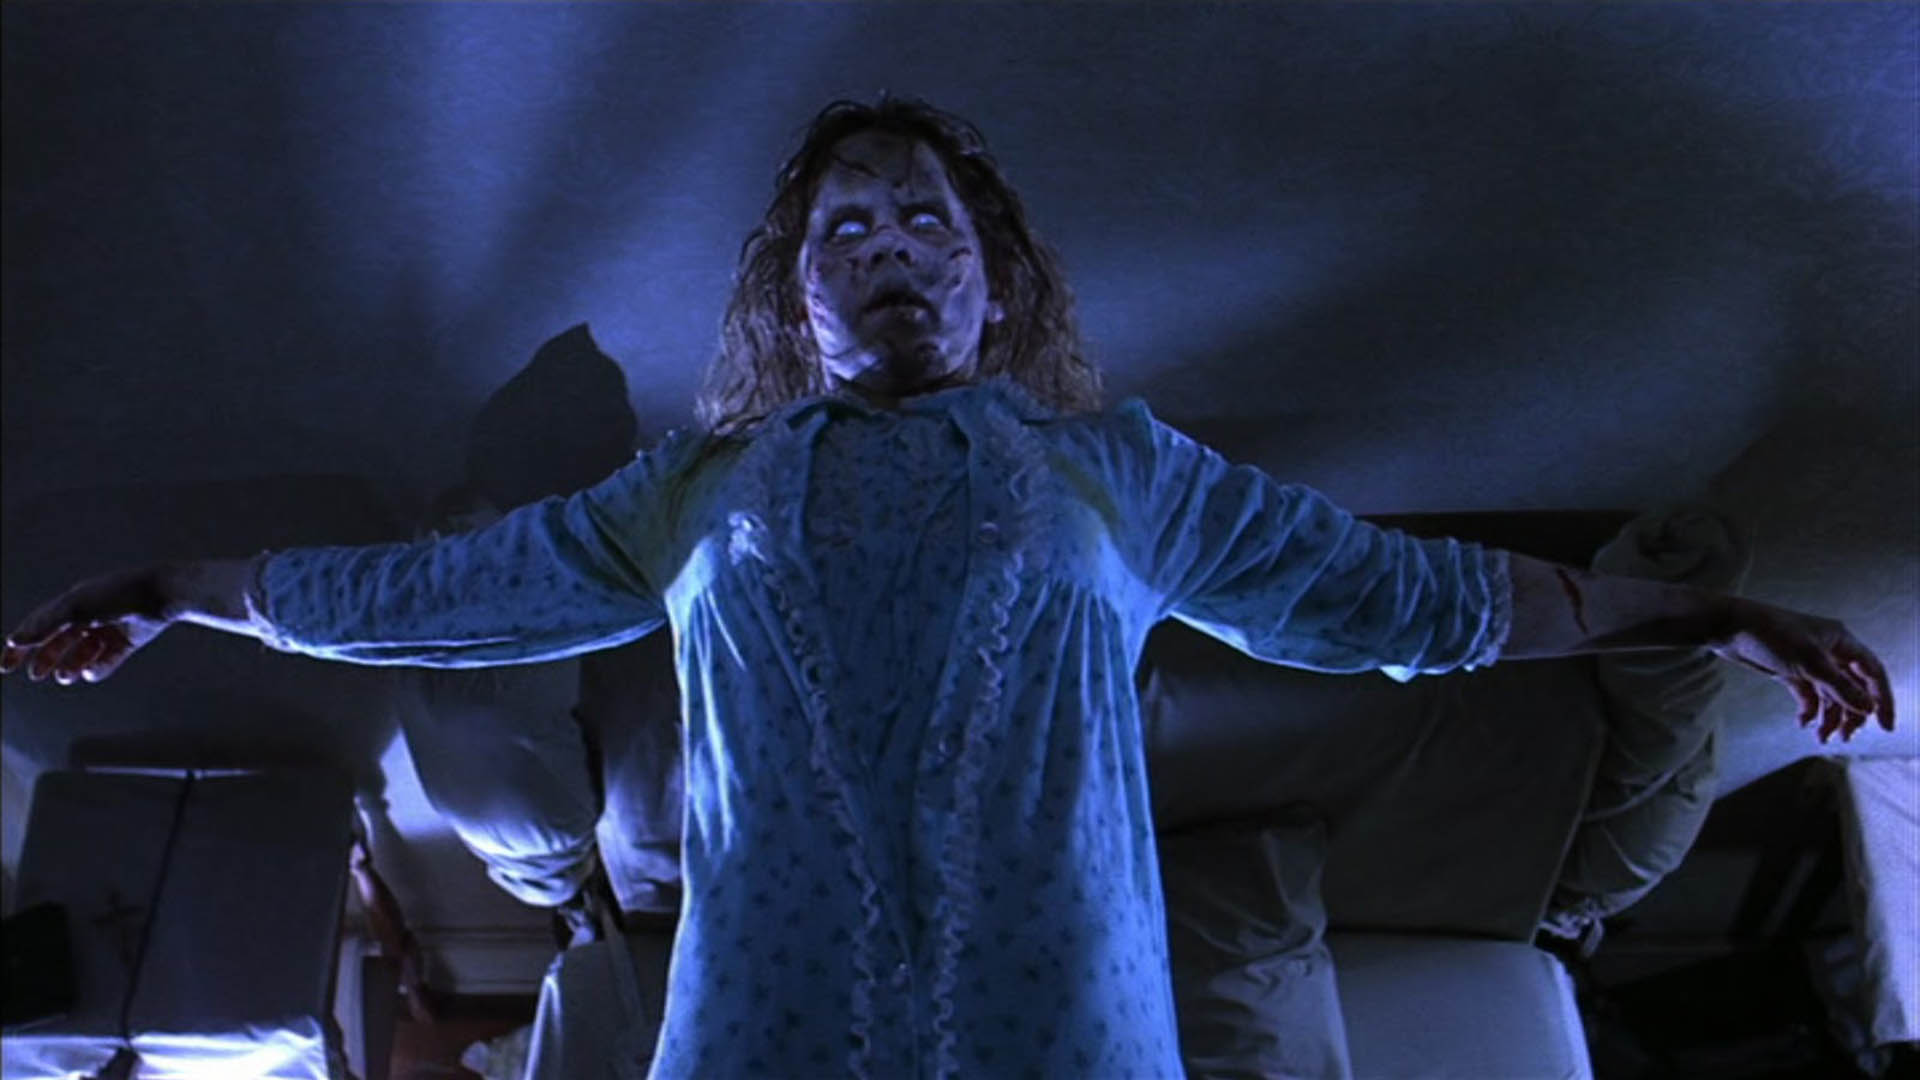 "El exorcista" es considerada una de las mejores películas de terror de todos los tiempos. (Warner Bros.)